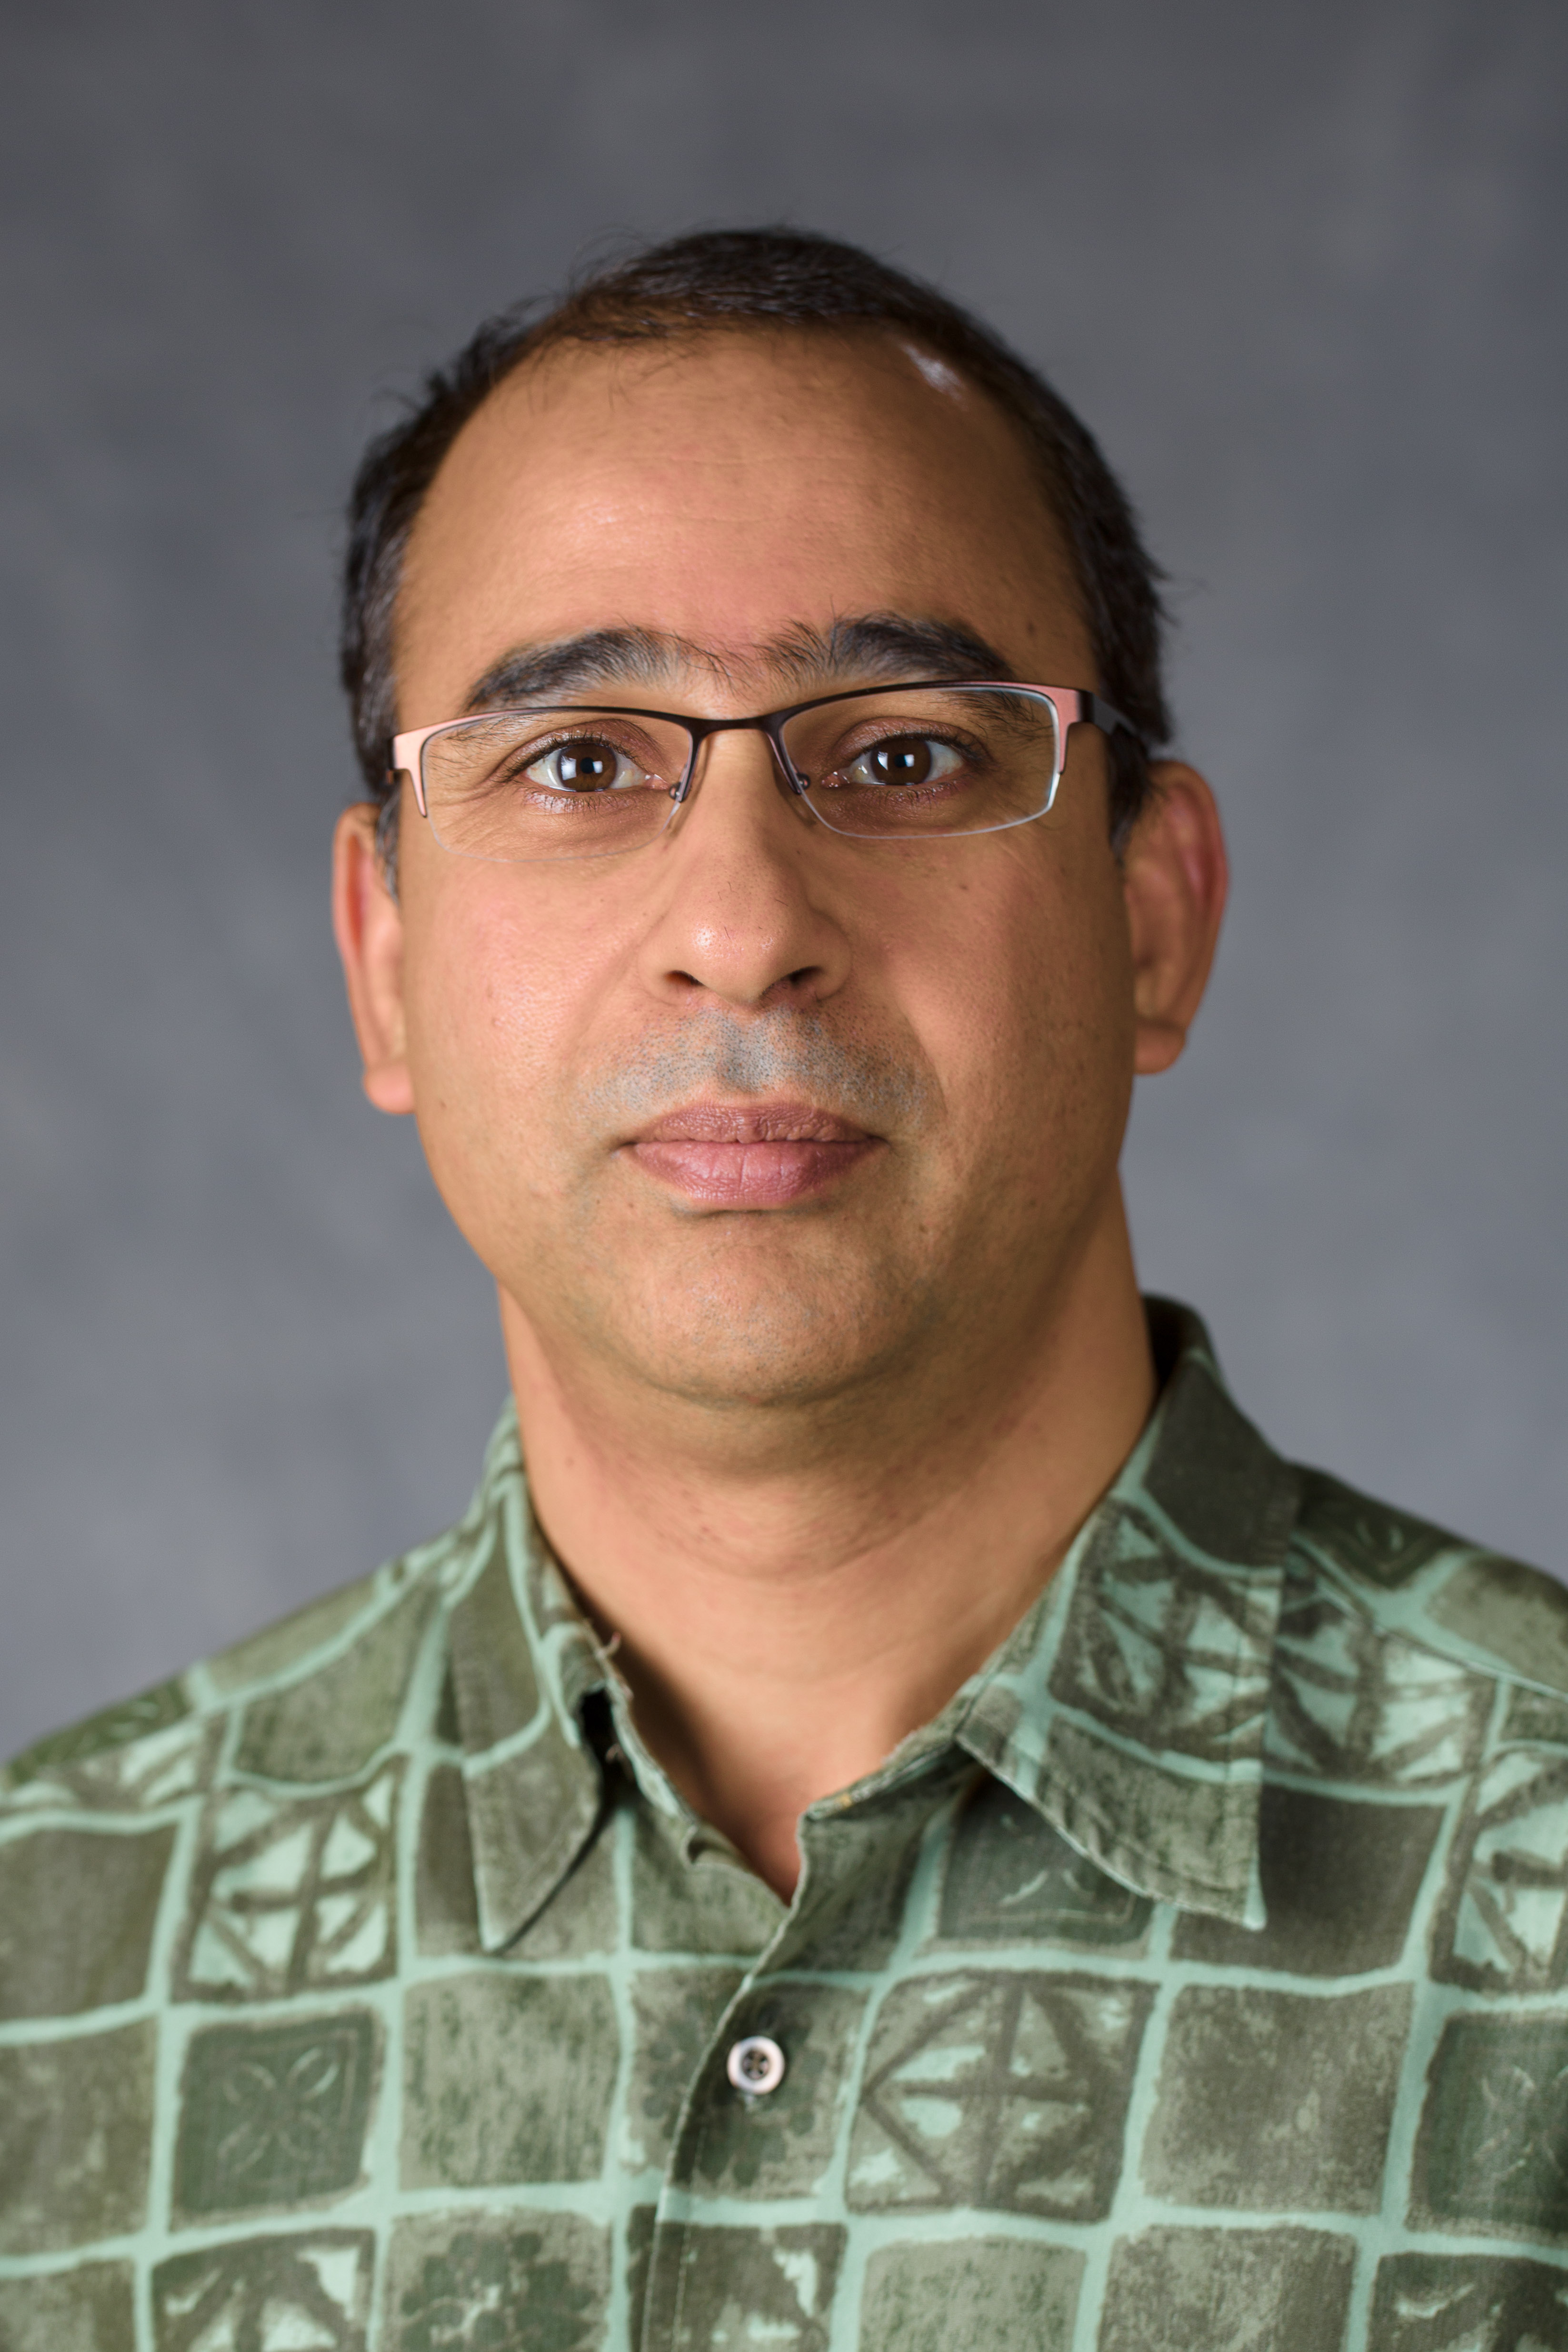 Professor Pradeep Kachroo